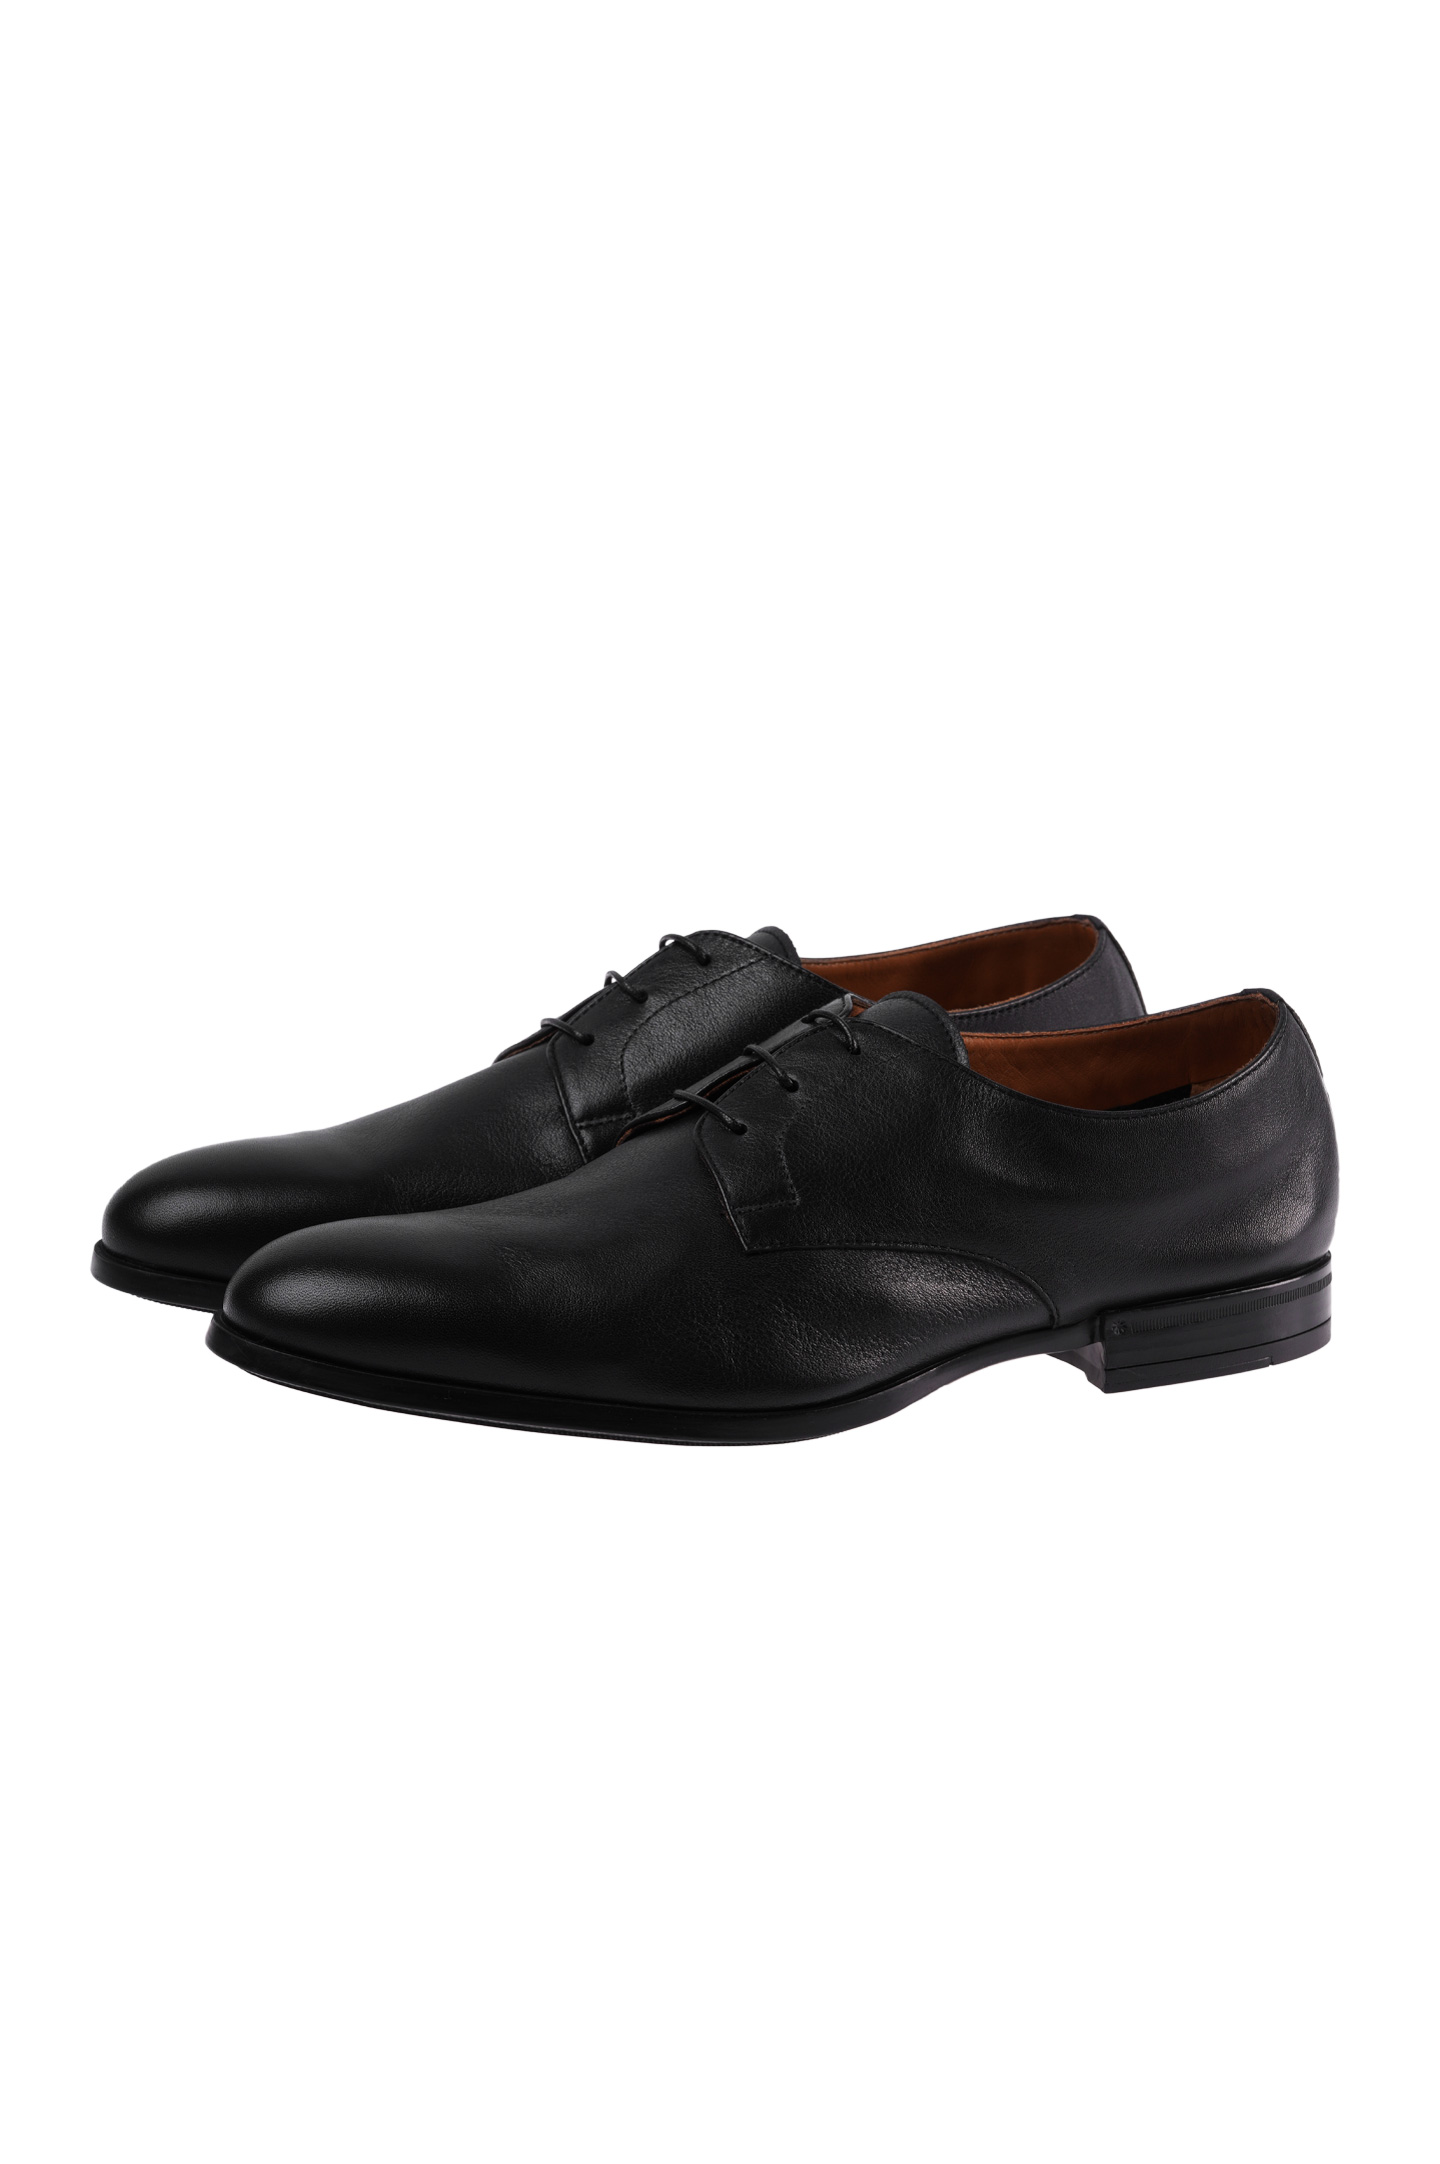 Туфли DOUCAL'S DU1252OSLOUZ065, цвет: Черный, Мужской